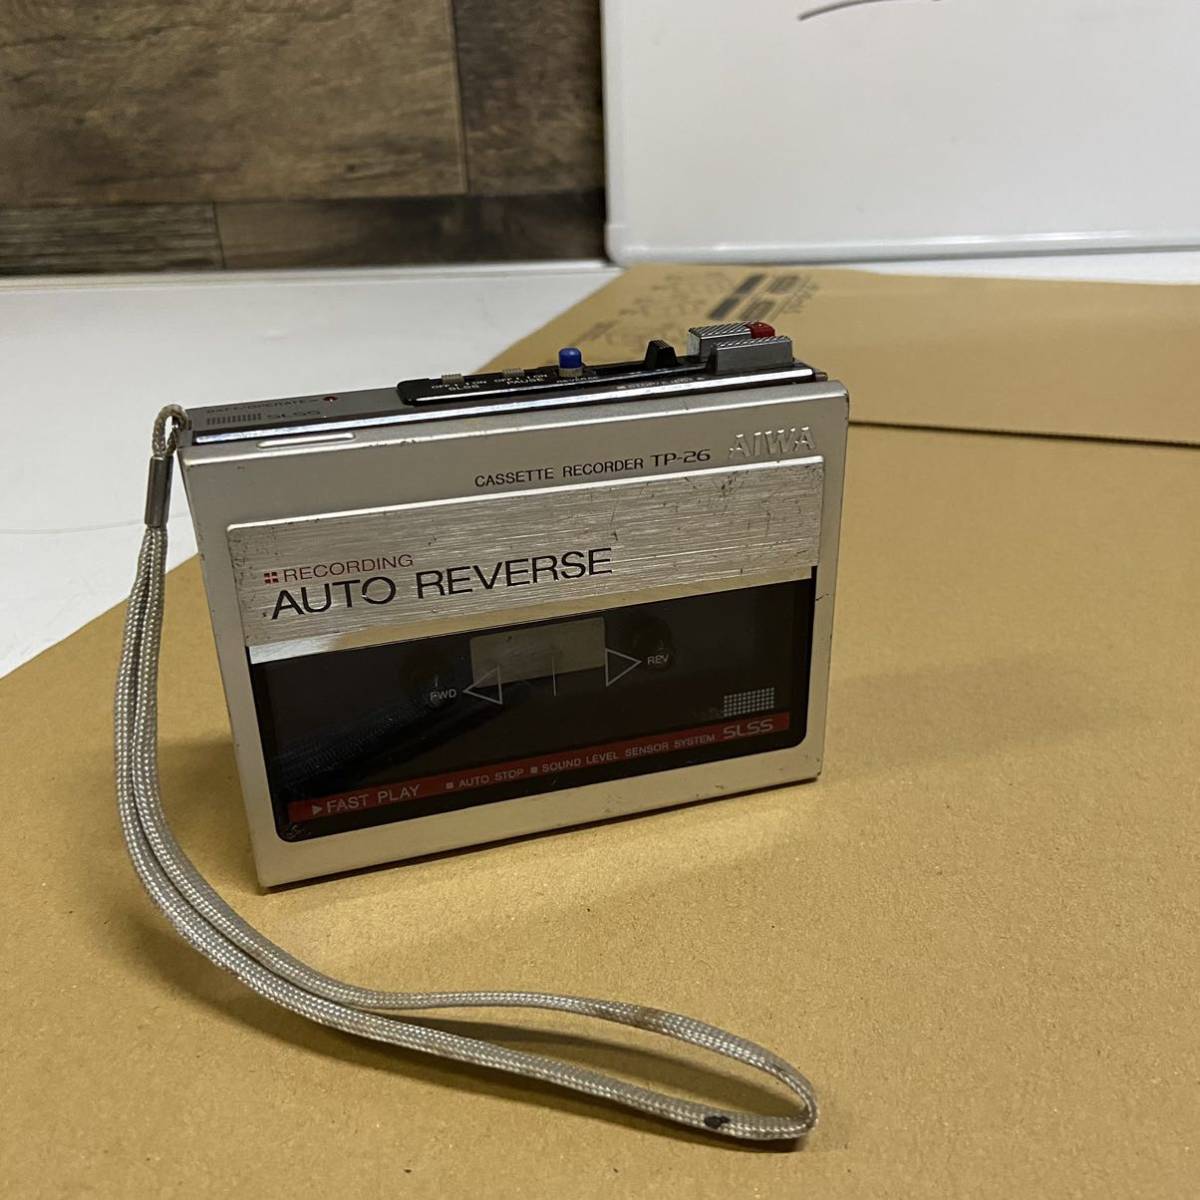 AIWA アイワ ポータブル カセットレコーダー TP-26 カセットプレーヤー RECORDING AUTO REVERSE レトロ 中古の画像1